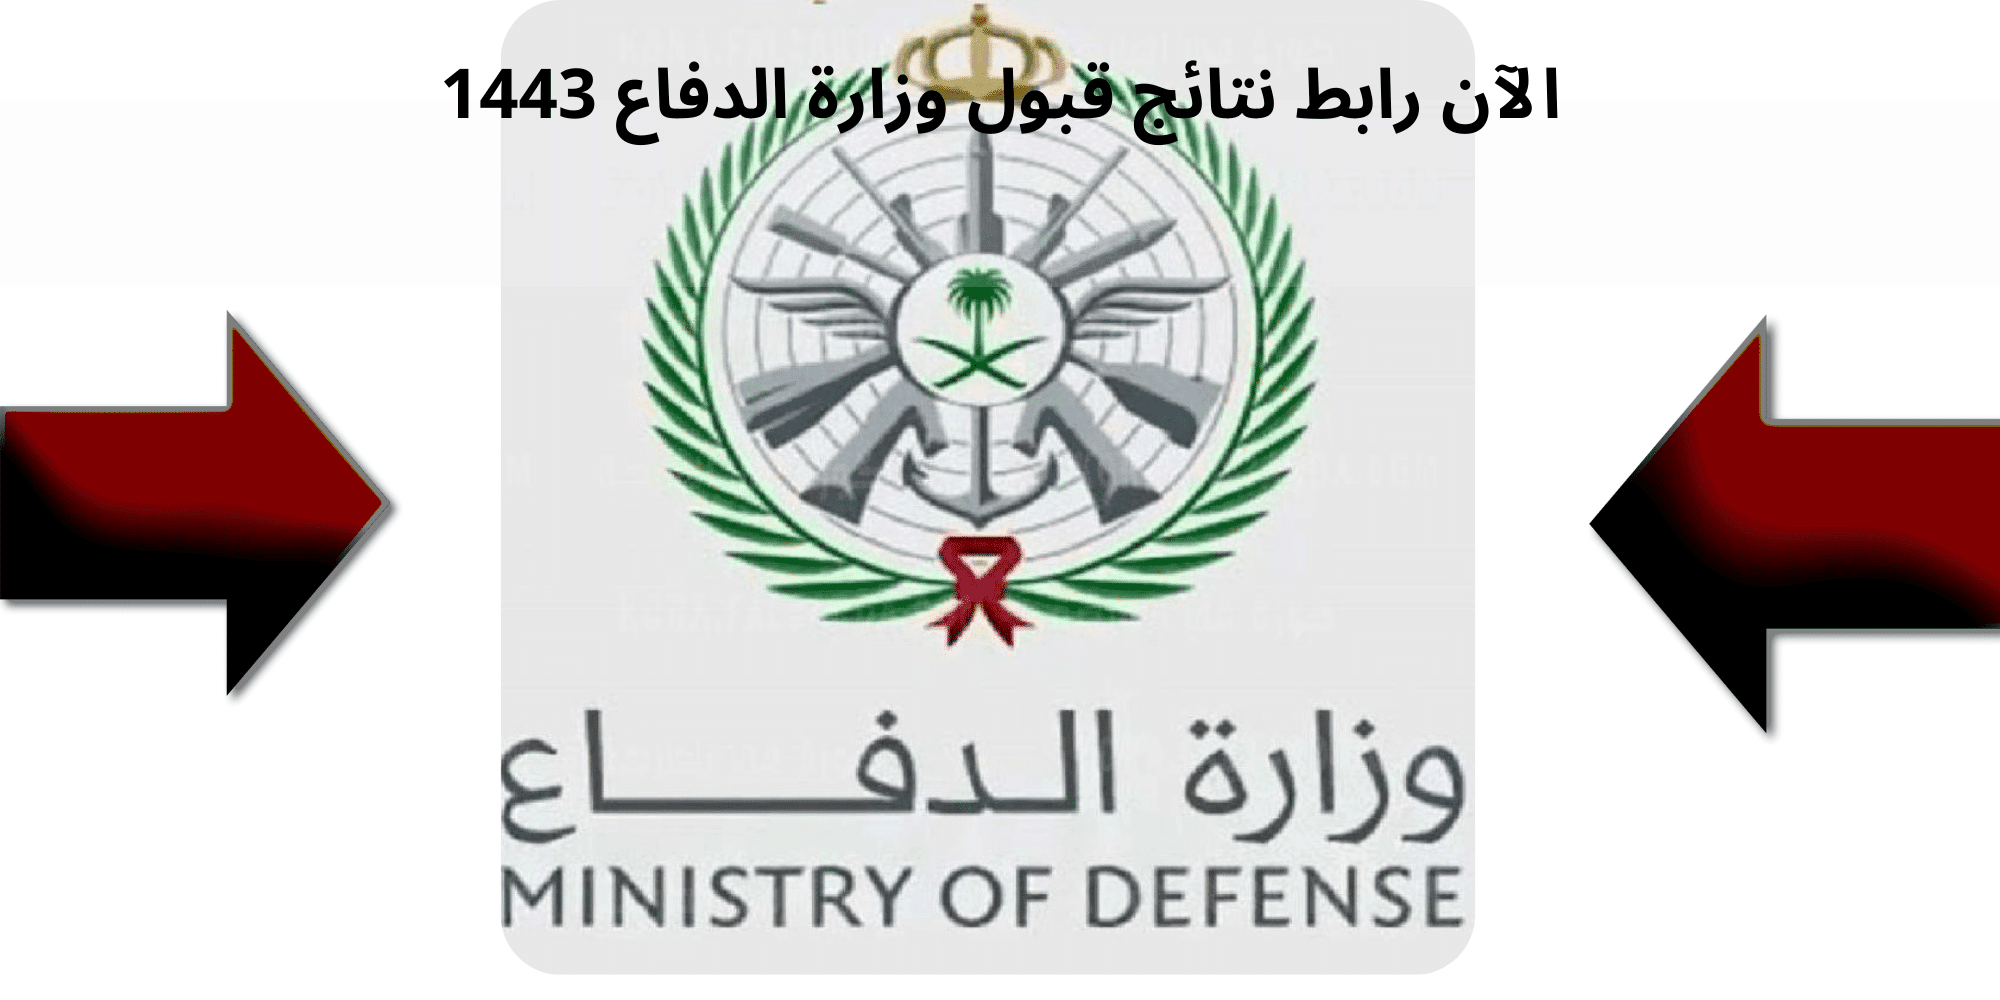 الآن رابط نتائج قبول وزارة الدفاع 1443 عبر بوابة القبول والتجنيد الموحد